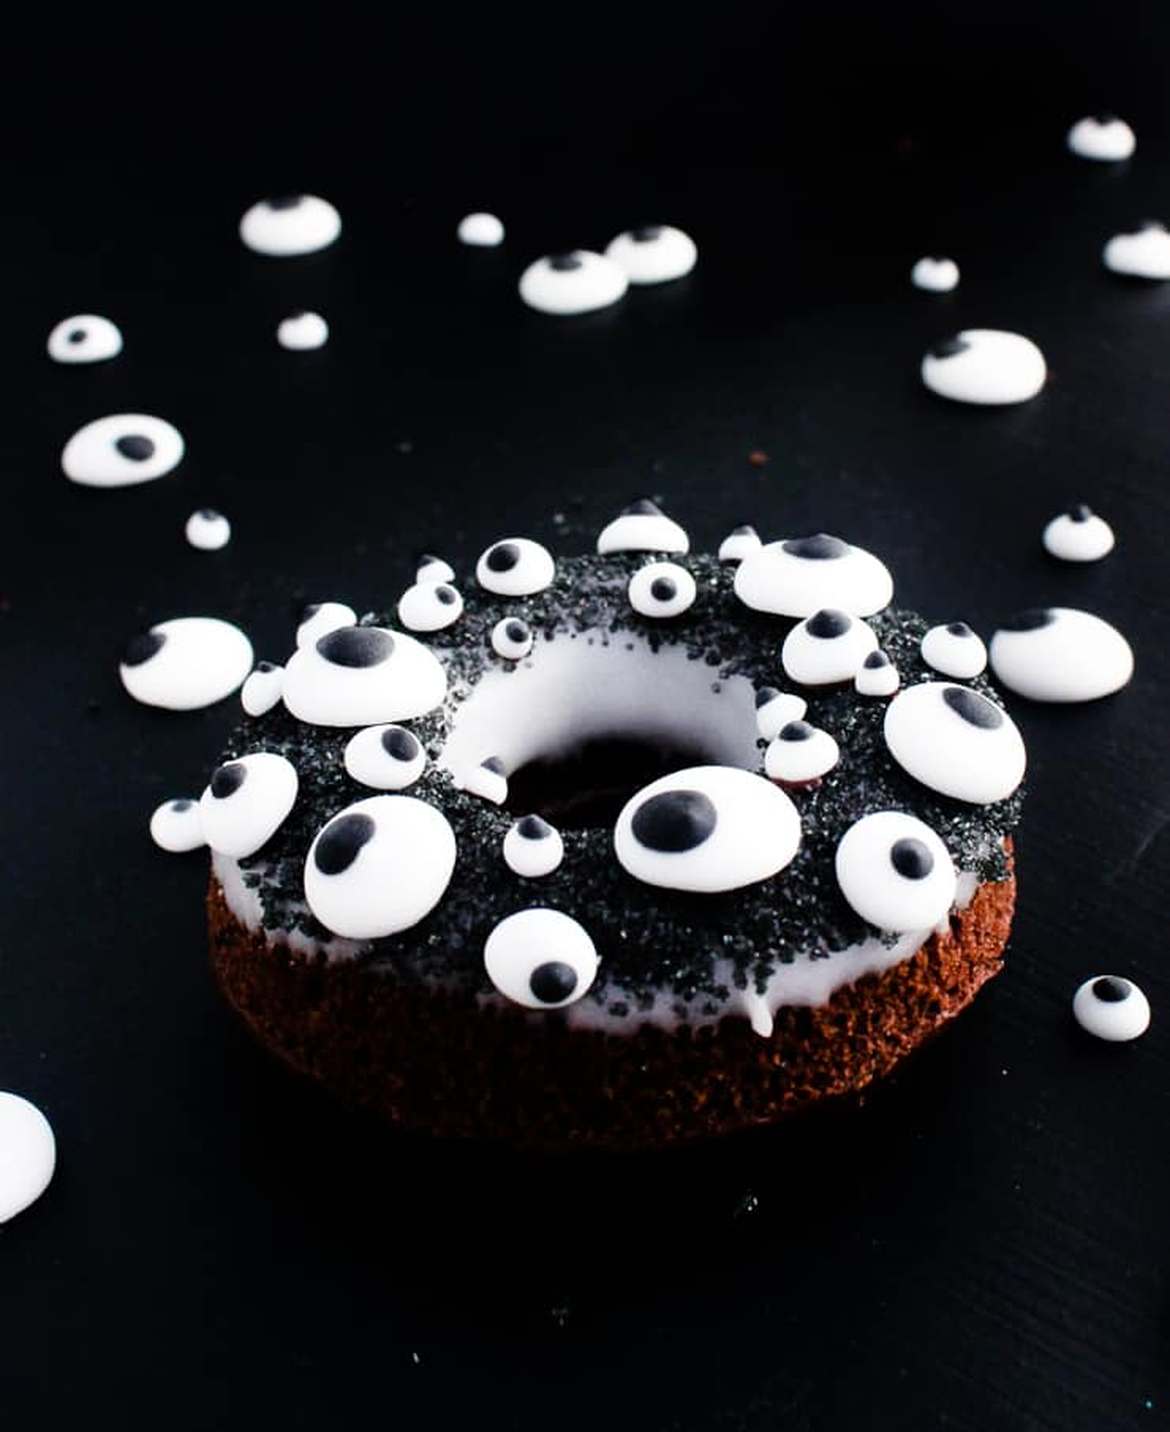 easy monster eye doughnuts